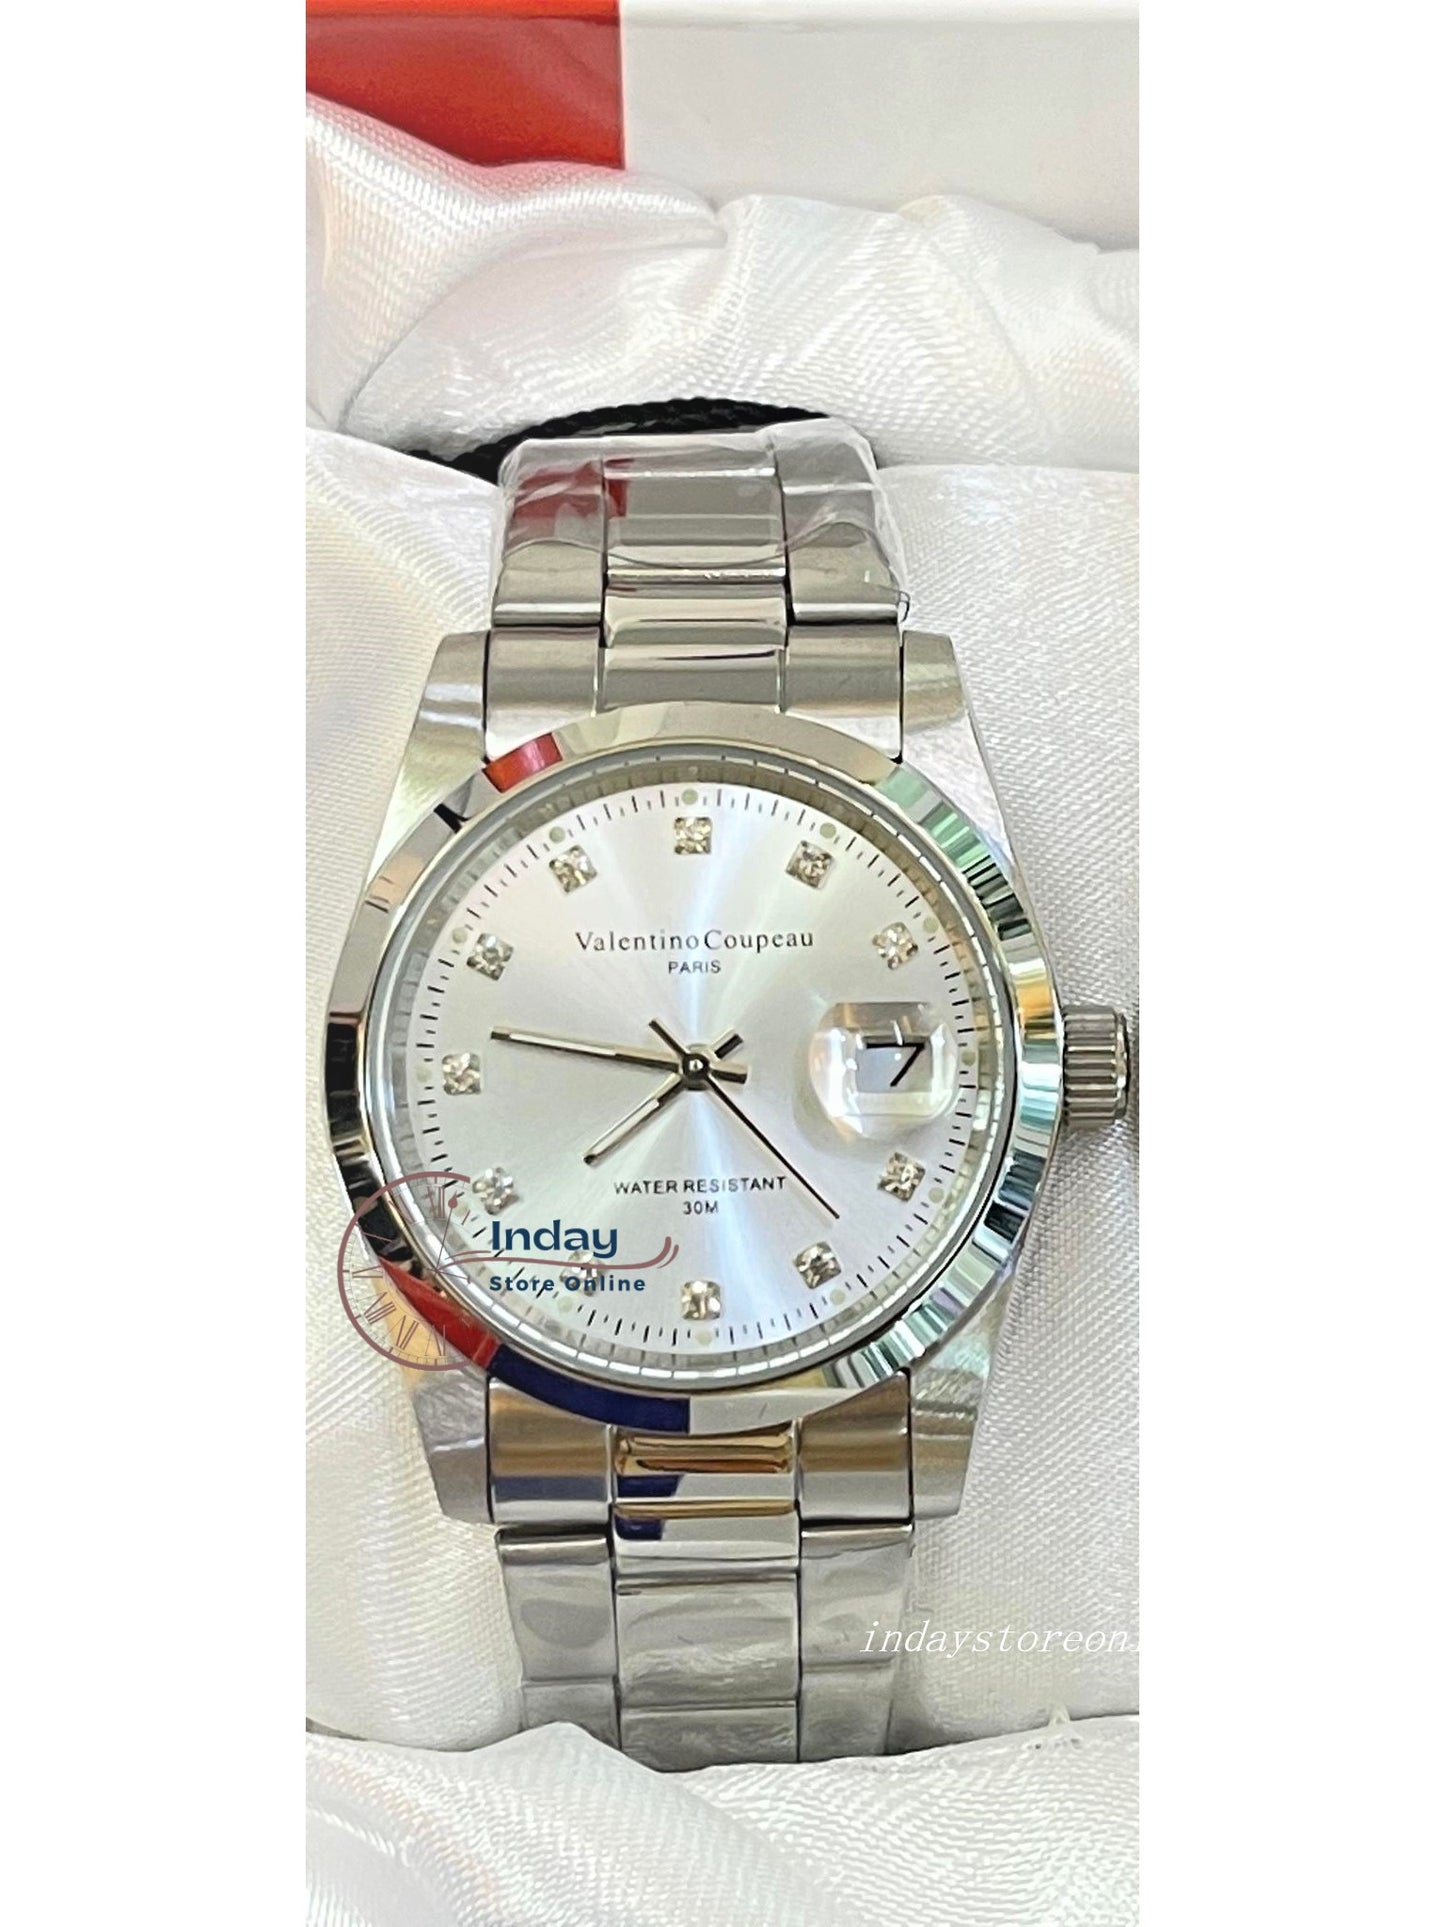 范倫鐵諾 古柏 Valentino Coupeau Men's Watch 12168SM-15